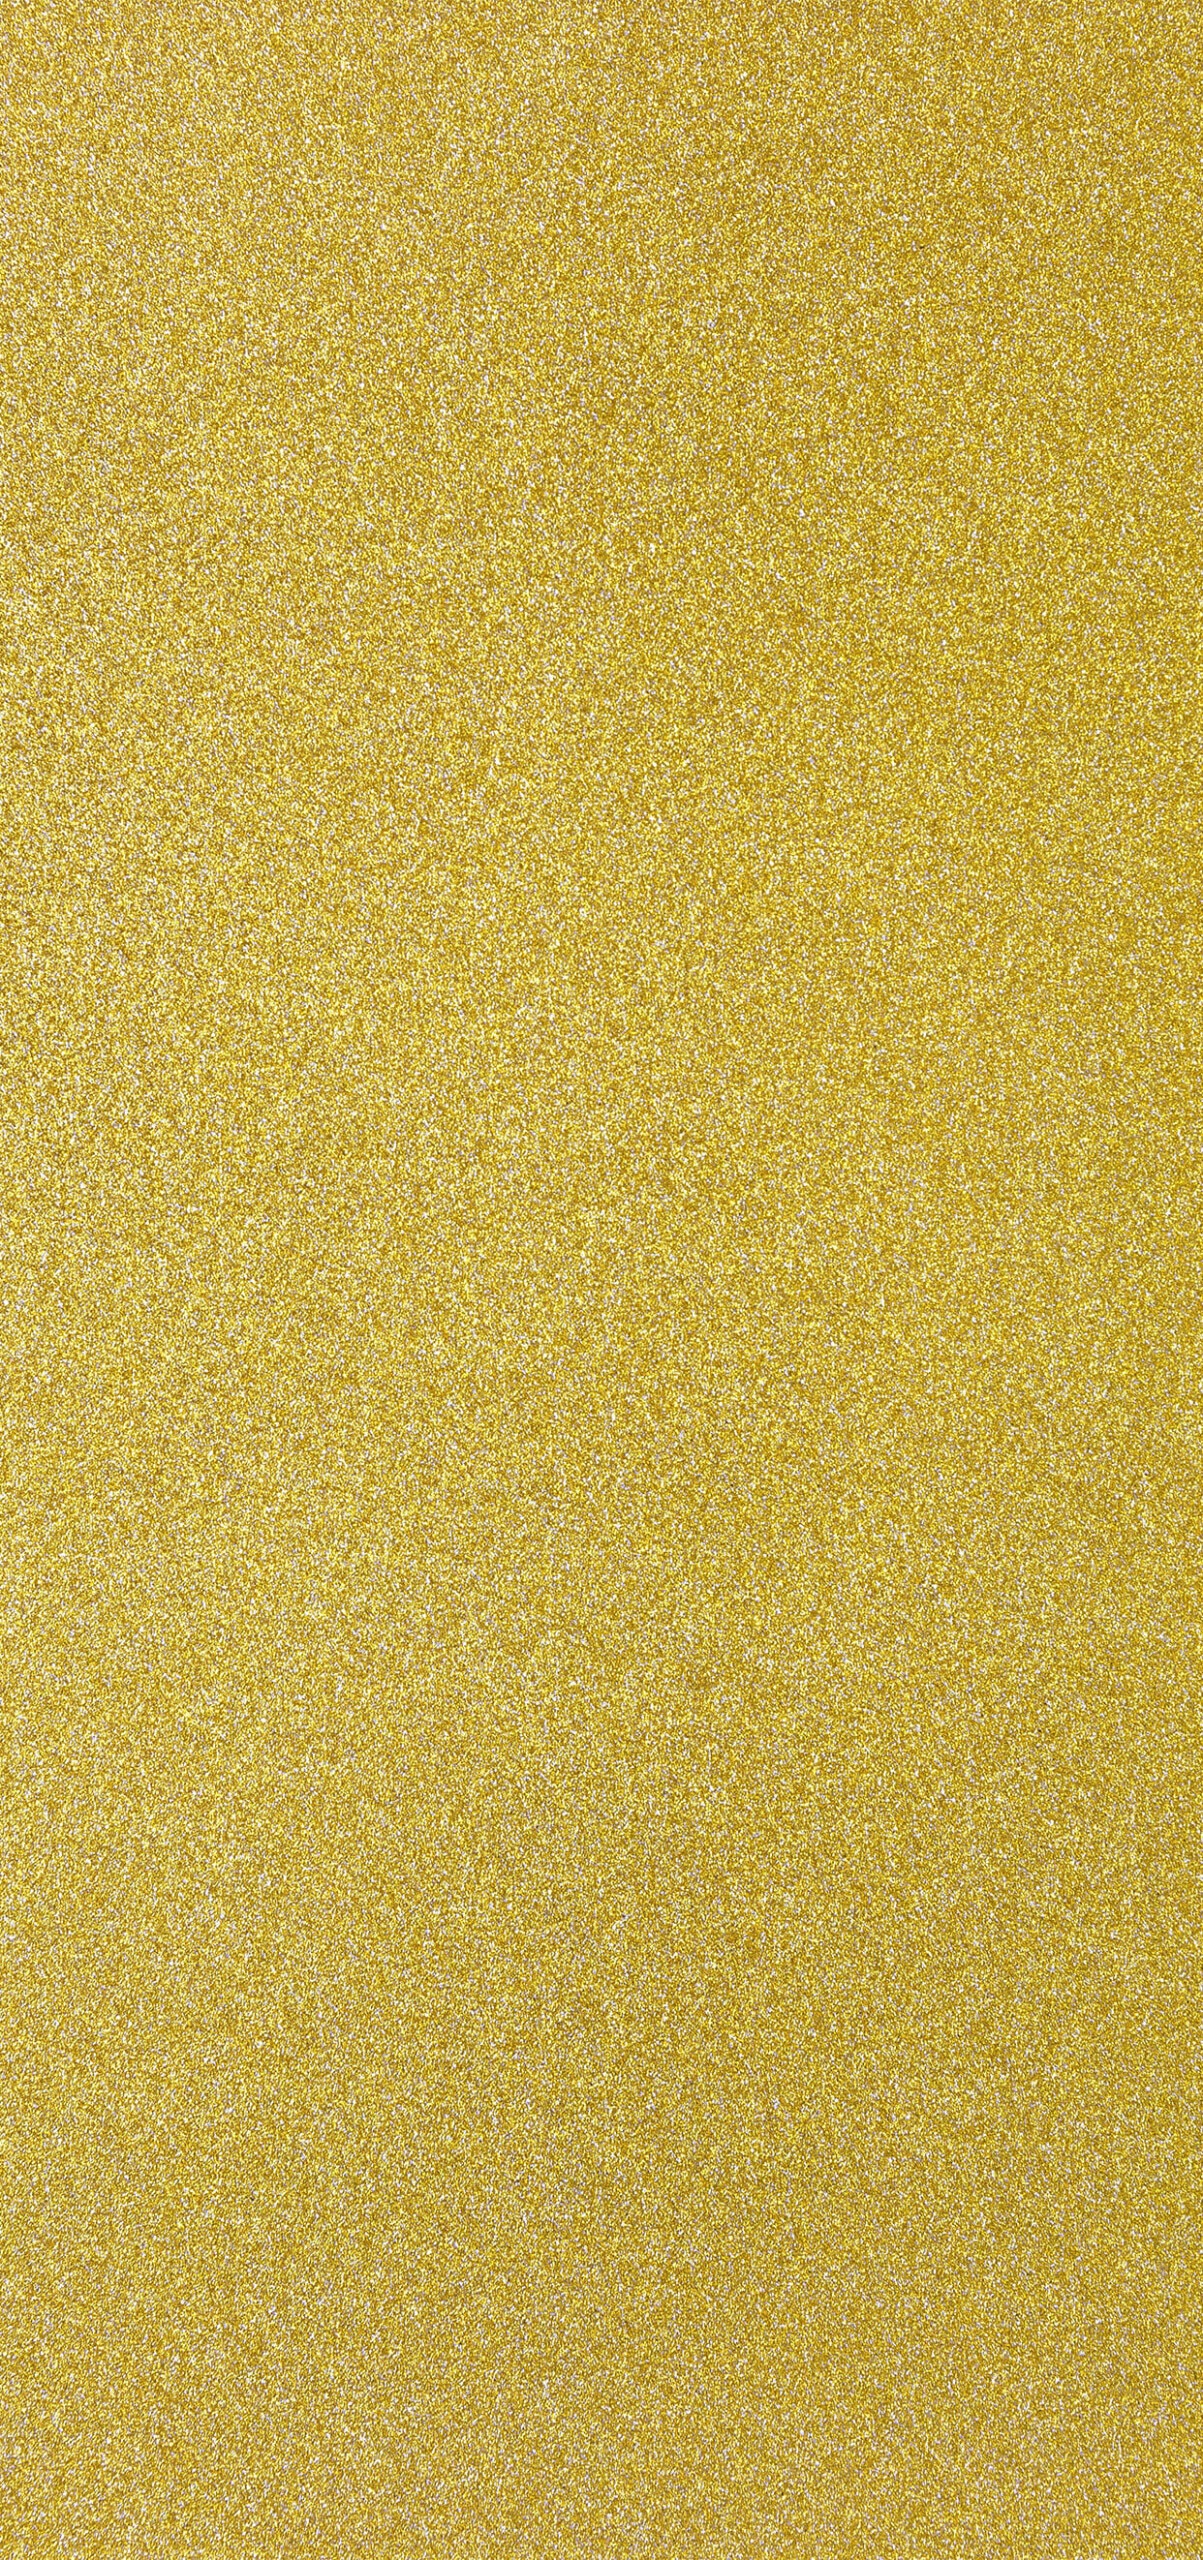 Golden Glittery iPhone XS Max Wallpaper